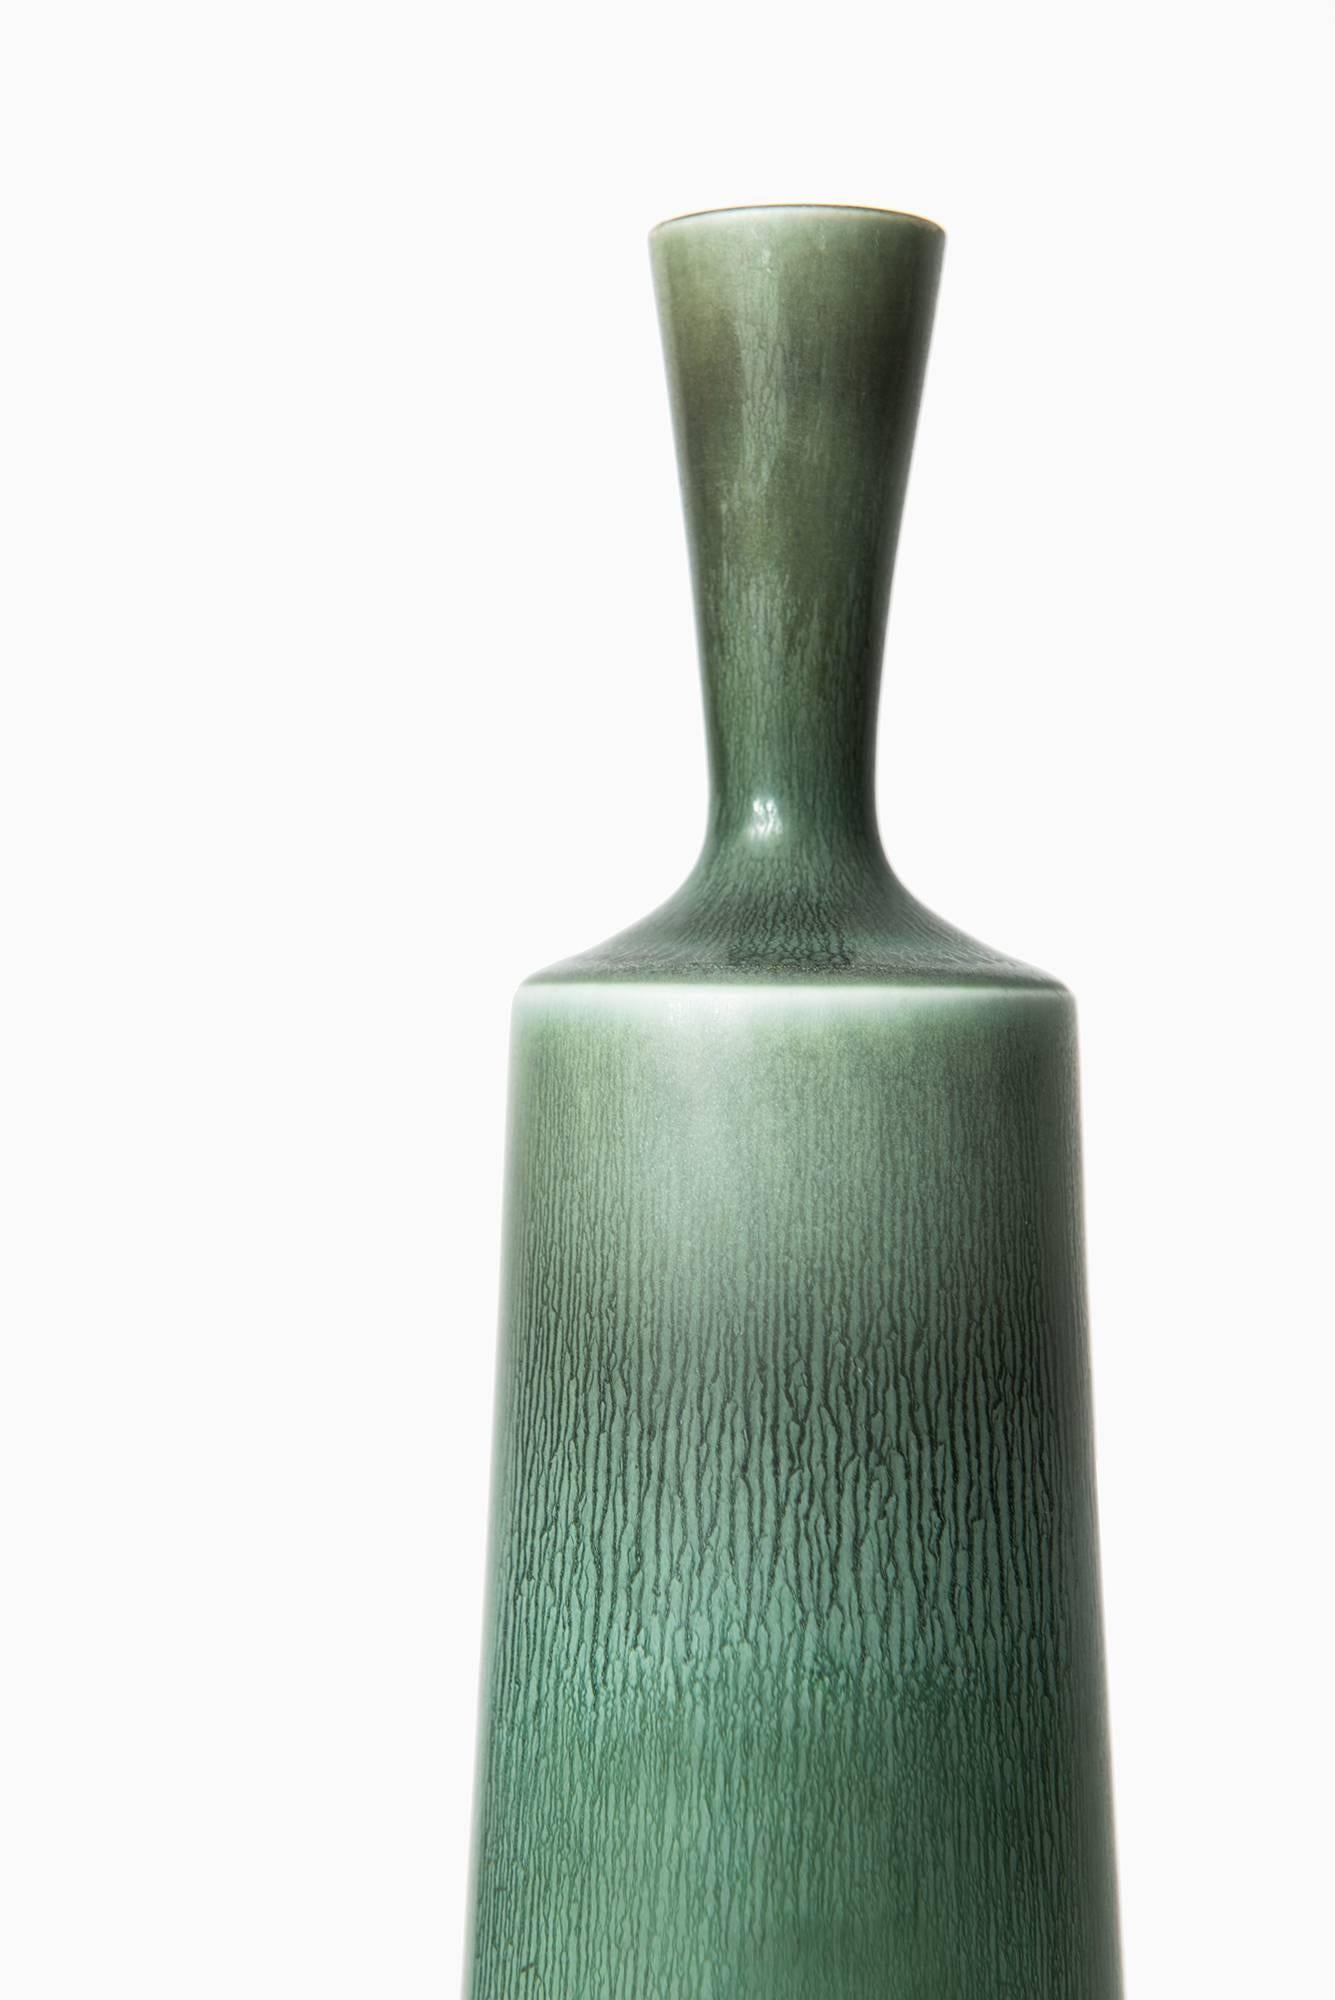 Swedish Berndt Friberg Ceramic Vase by Gustavsberg in Sweden